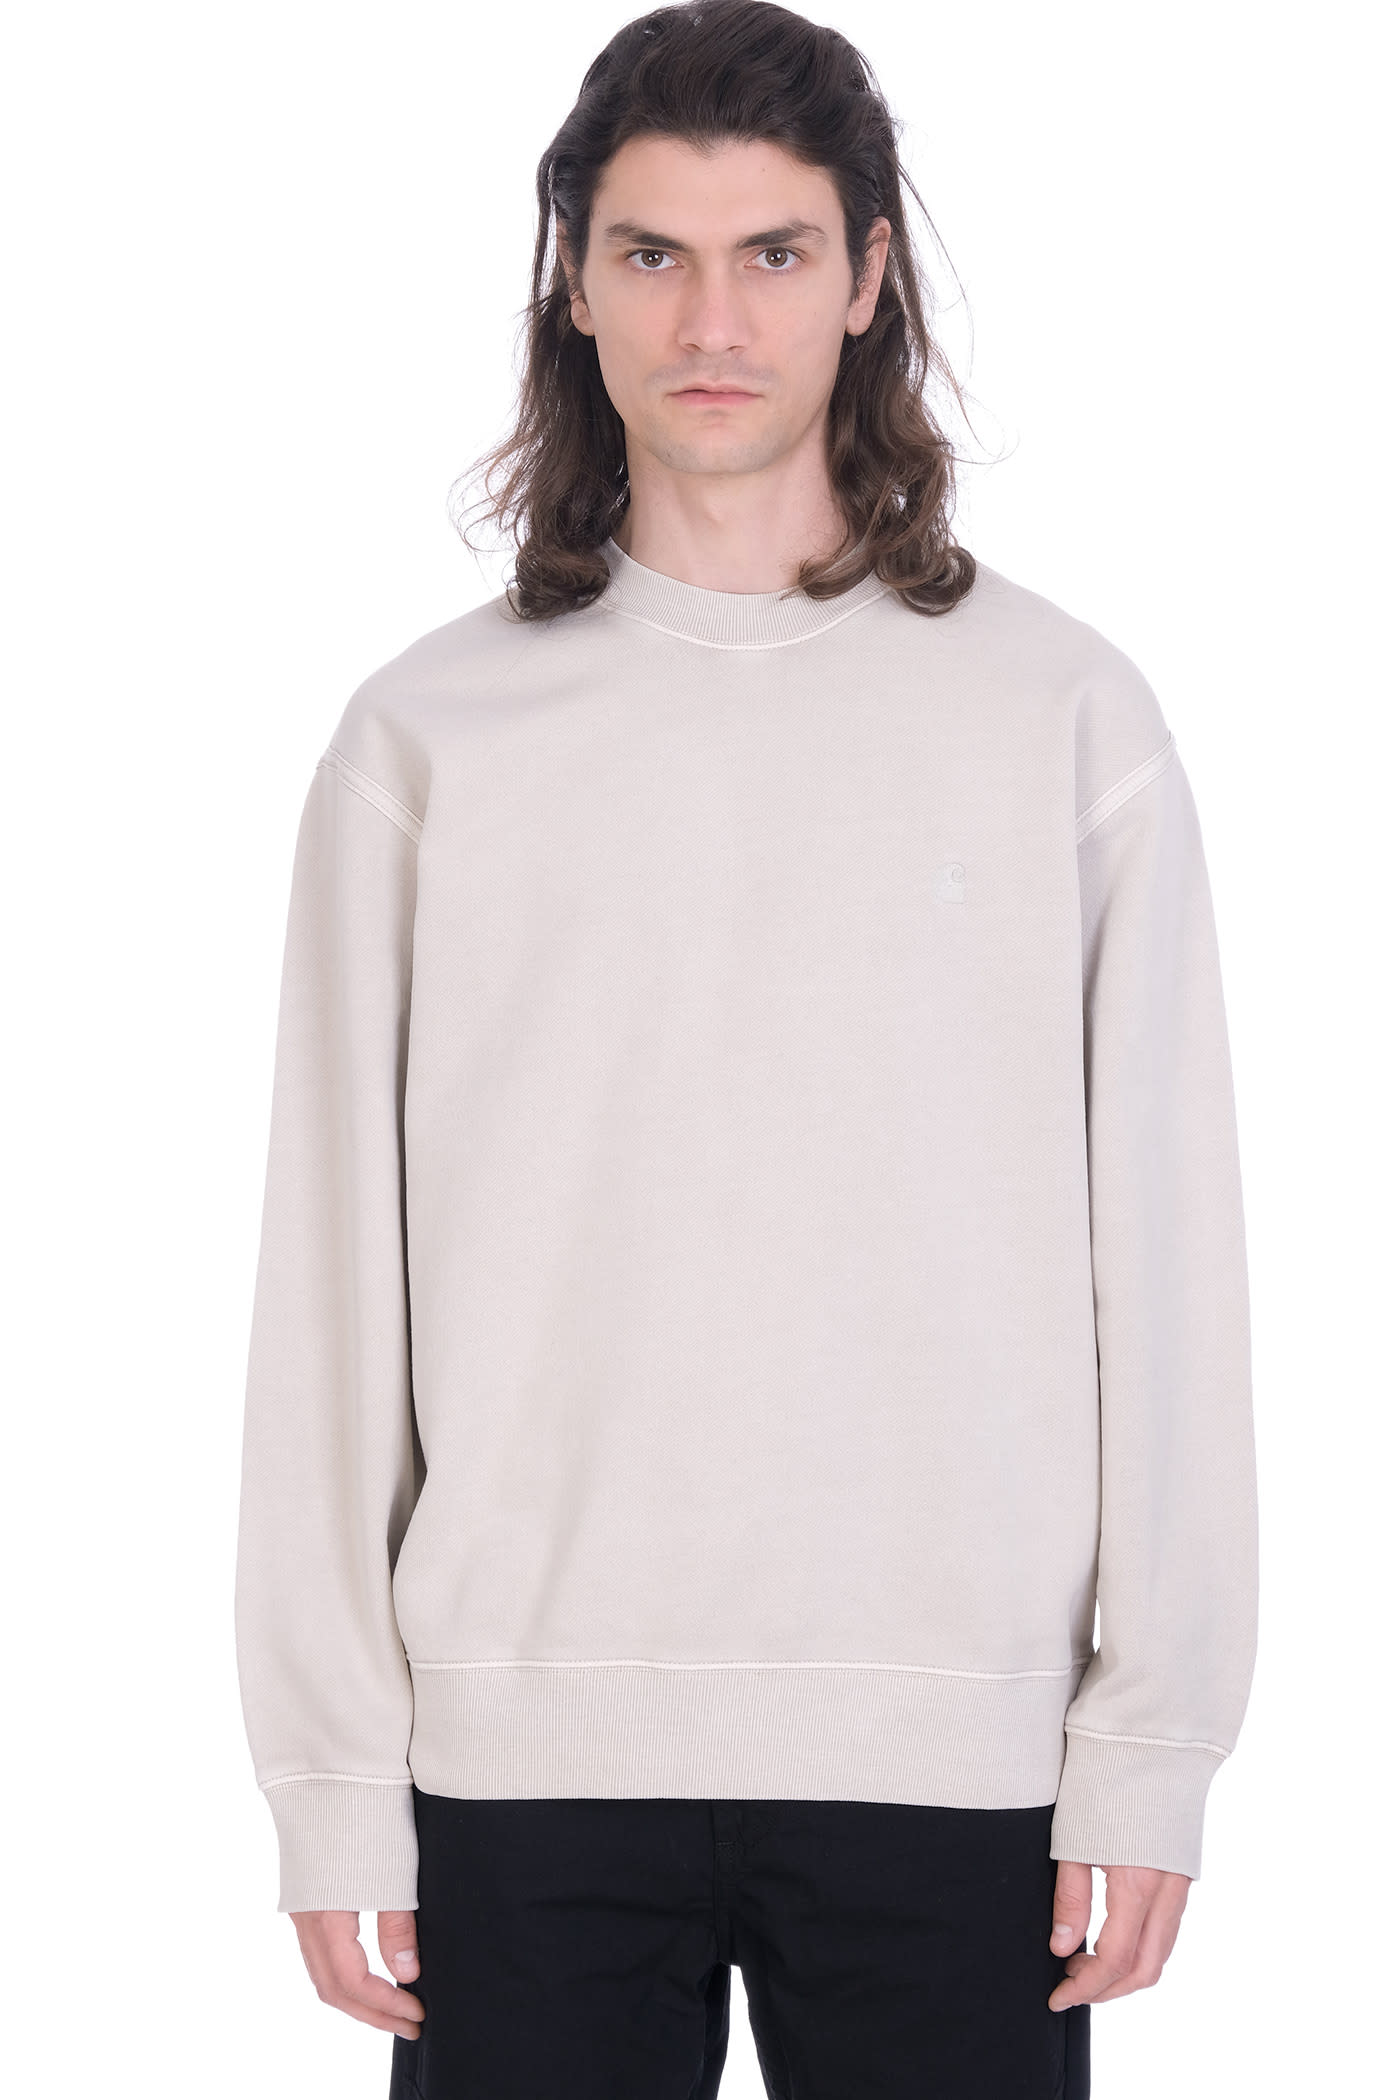 Carhartt Sweatshirt In Beige Cotton